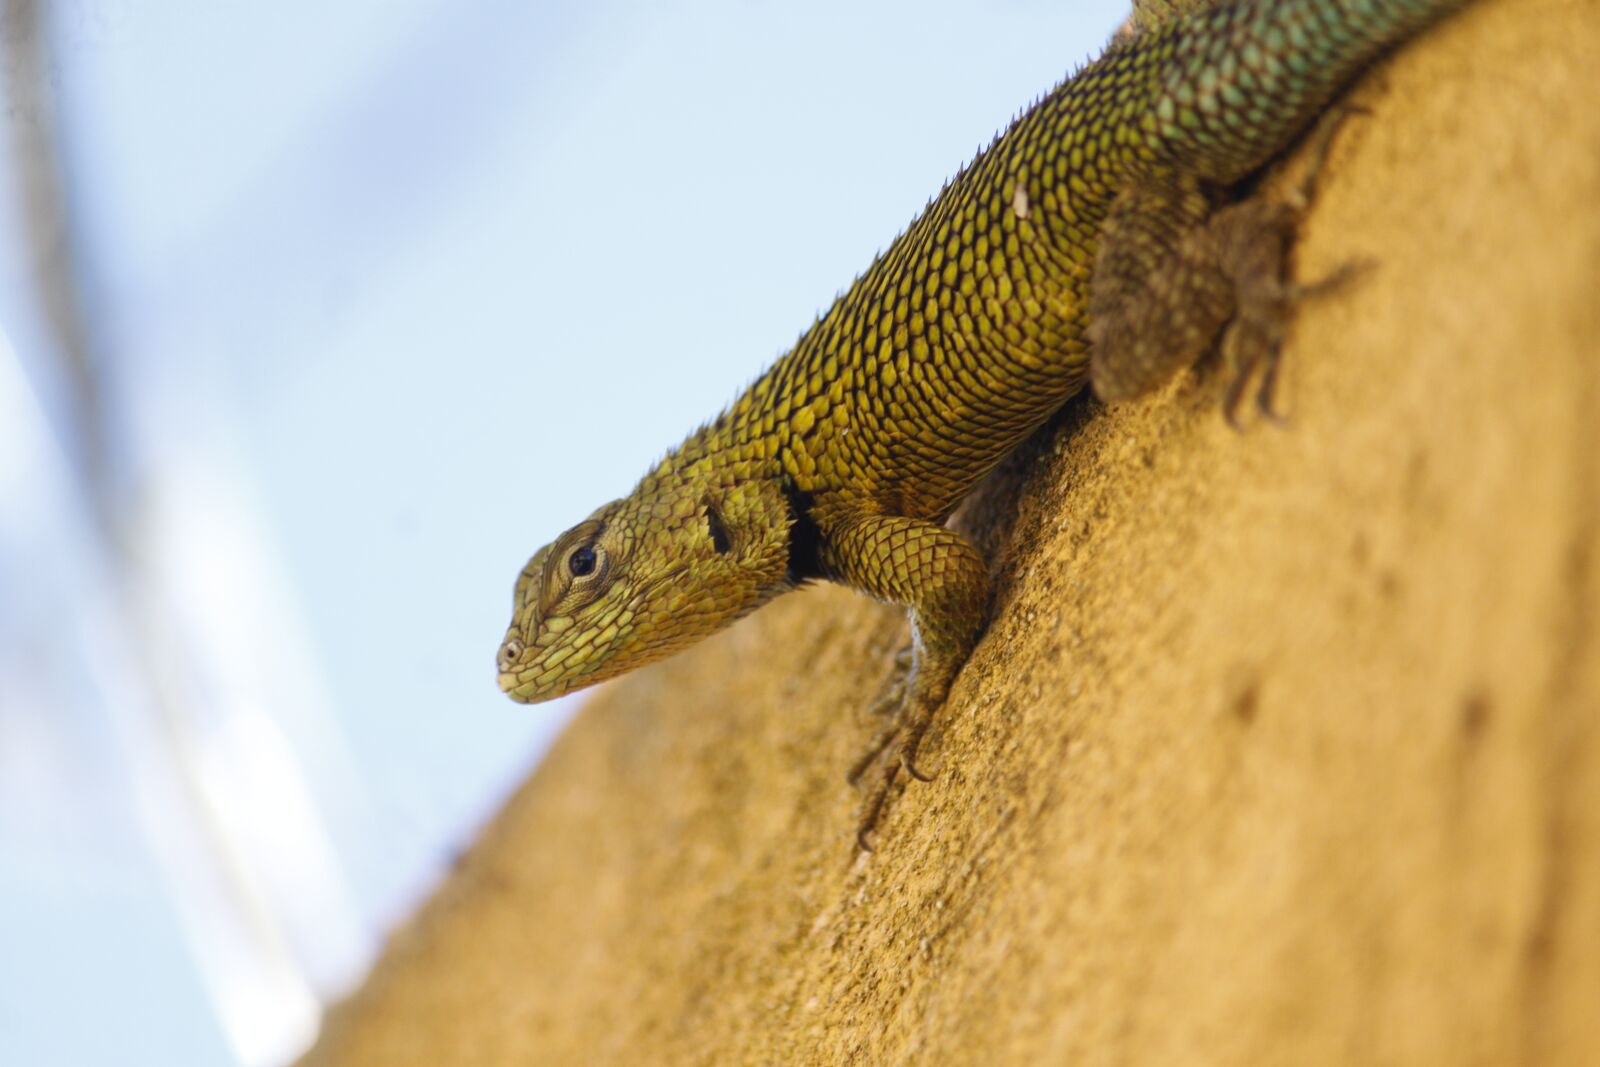 Canon EOS 500D (EOS Rebel T1i / EOS Kiss X3) sample photo. Lizard, reptile, animal photography